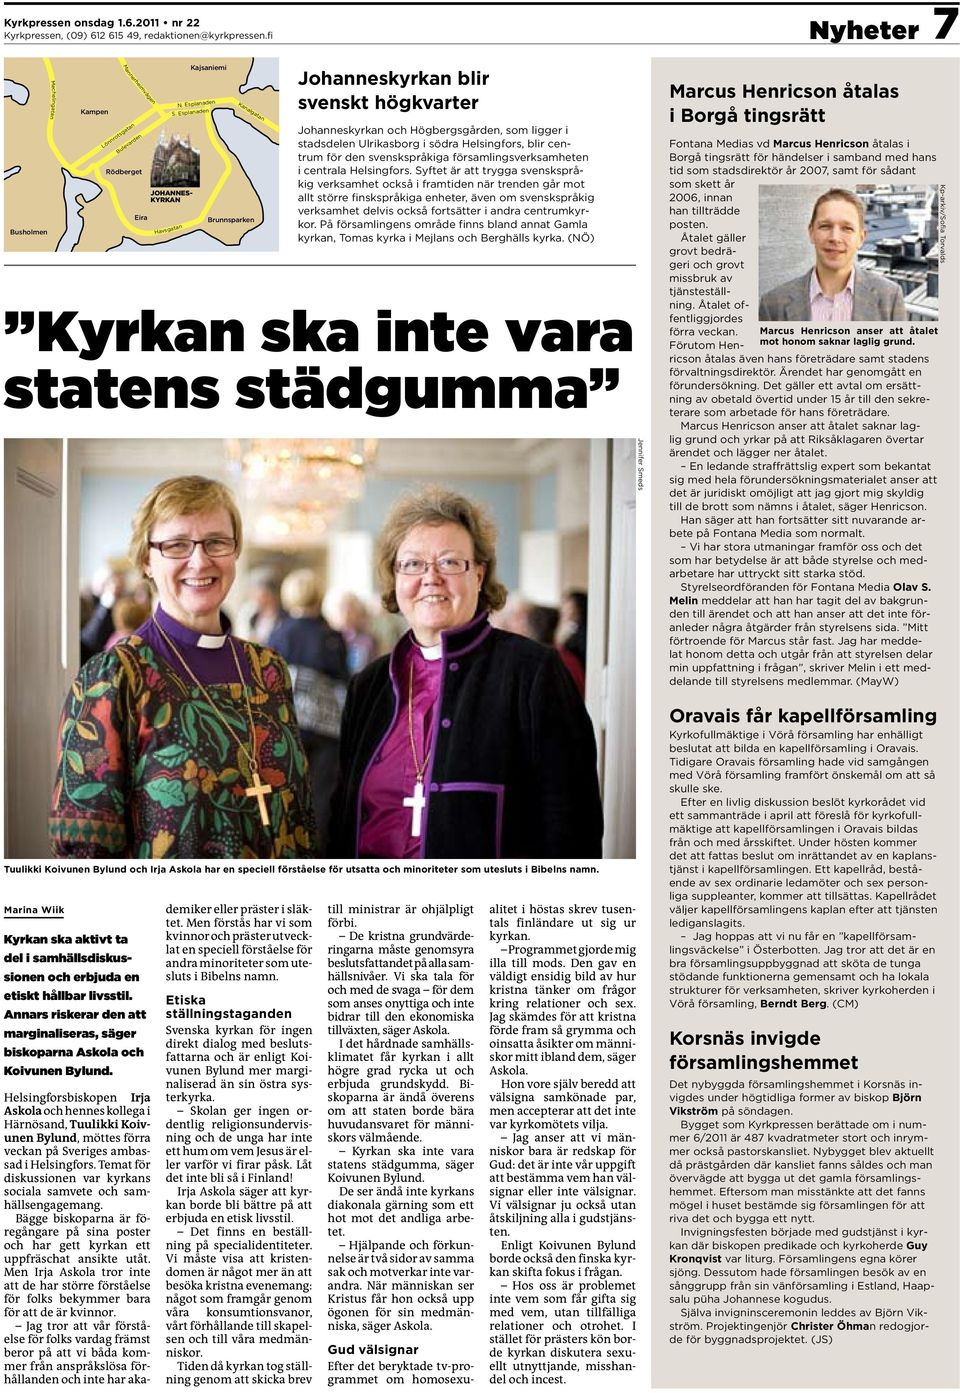 Annars riskerar den att marginaliseras, säger biskoparna Askola och Koivunen Bylund. JOHANNES- KYRKAN Havsgatan Kajsaniemi N. Esplanaden S.